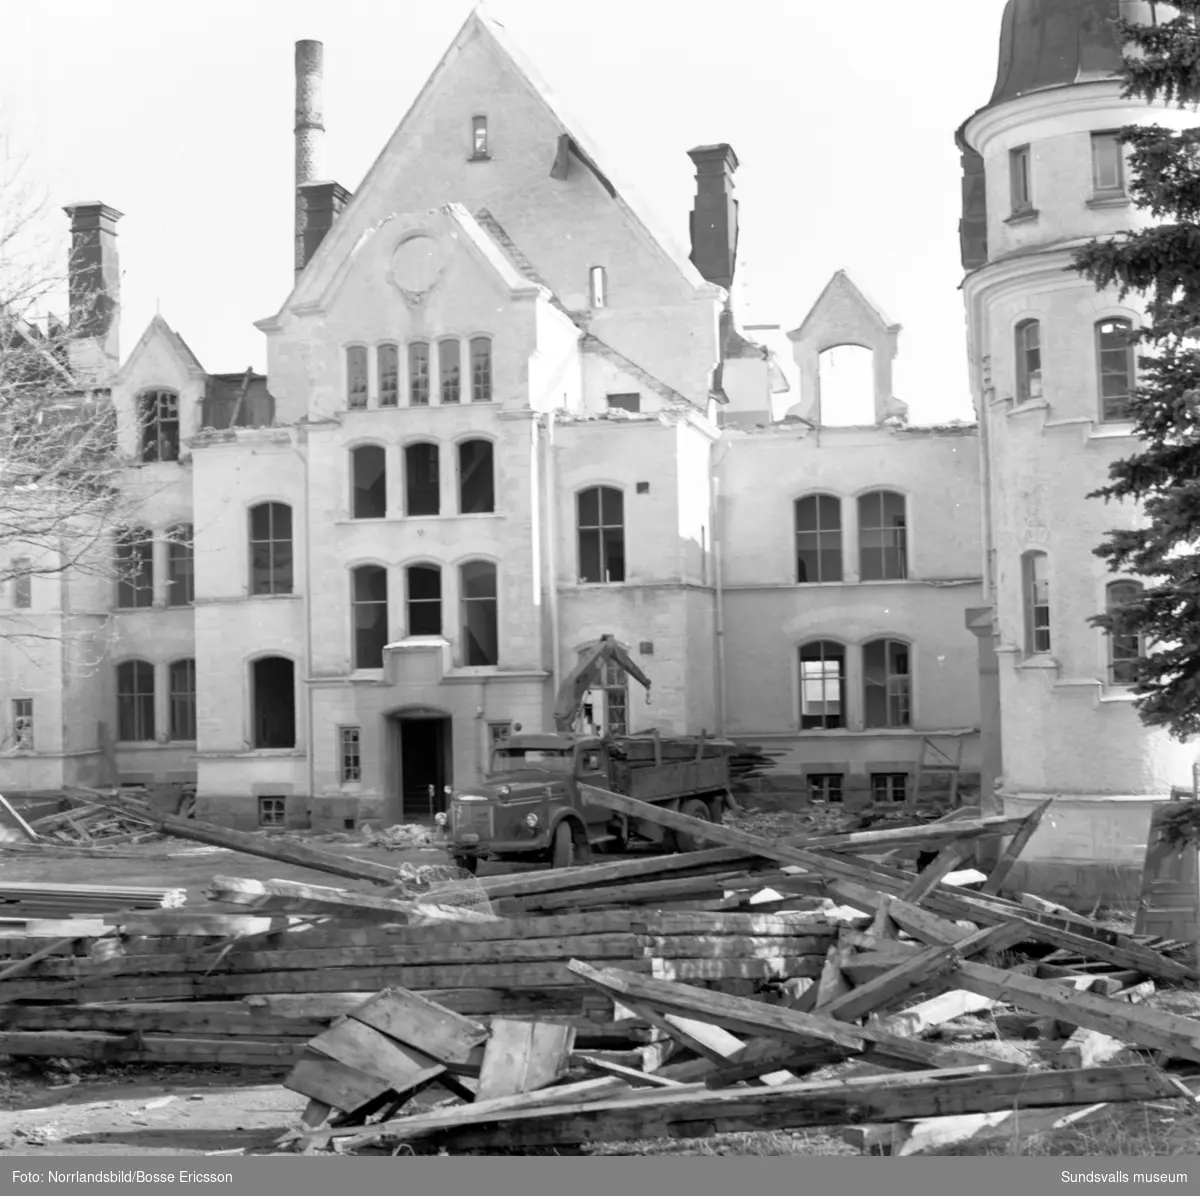 Sprängning av Birstahemmet i Skön, även kallat "Fattigpalatset". Ålderdomshem och fattiggård, senare ersatt av Solhaga. Huset uppfört 1891, rivet 1964. Arkitekt Emil Befwe.